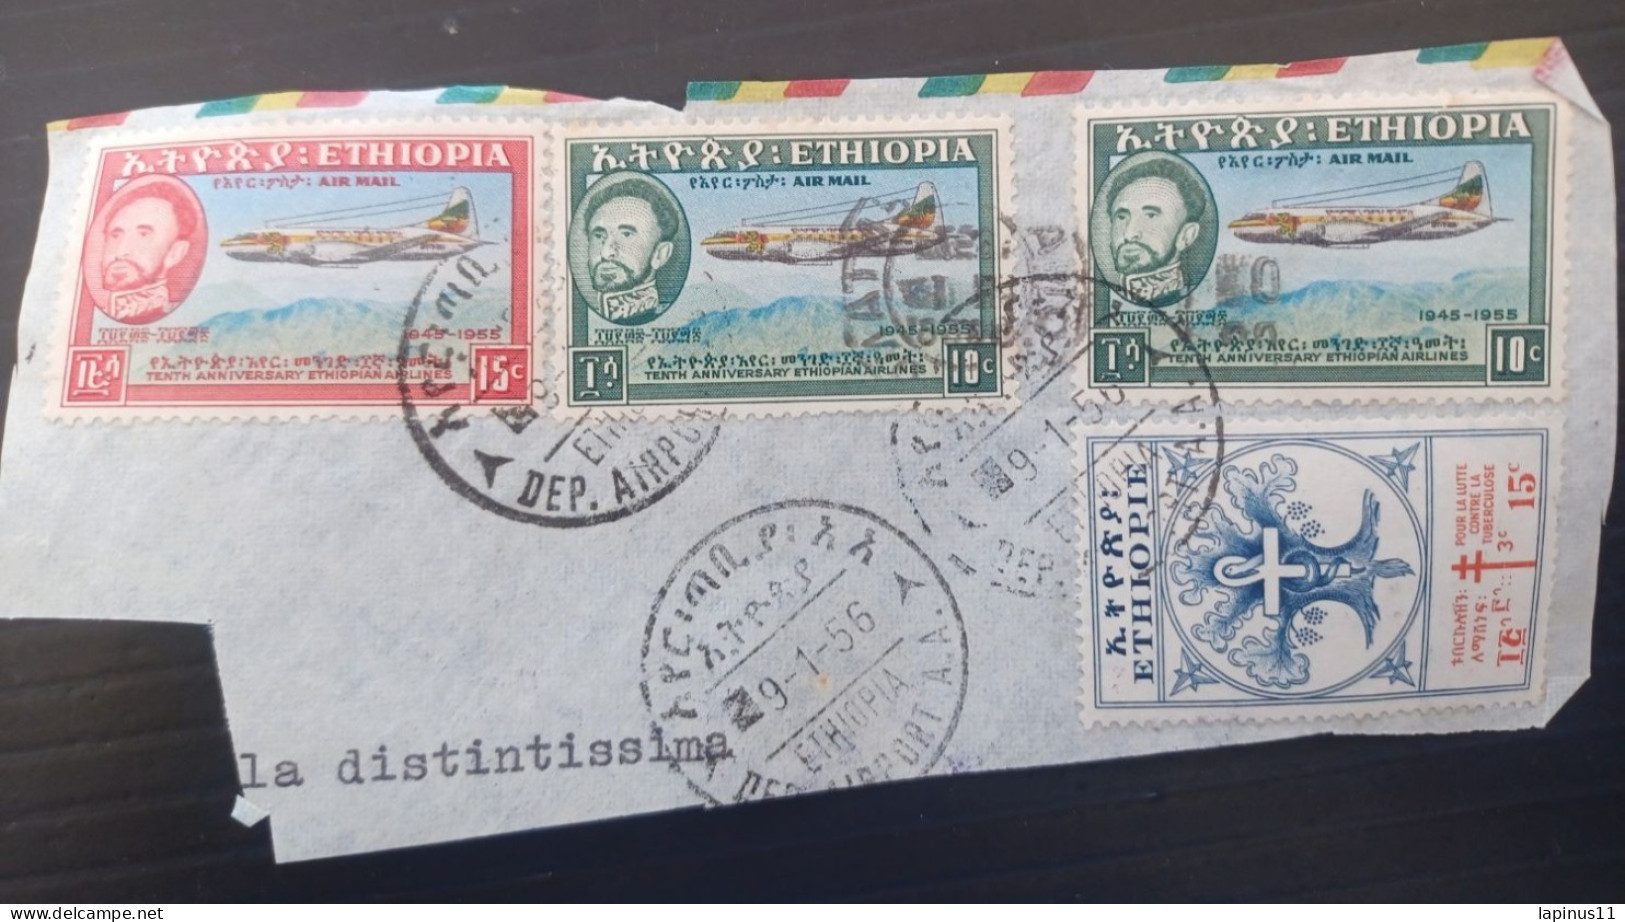 ETIOPIA 1956 AIRMAILYVERT N 304 LUTTE CONTRE LA TUBERCULOSE N 35-36 AIRMAIL FRAGMANT - Äthiopien